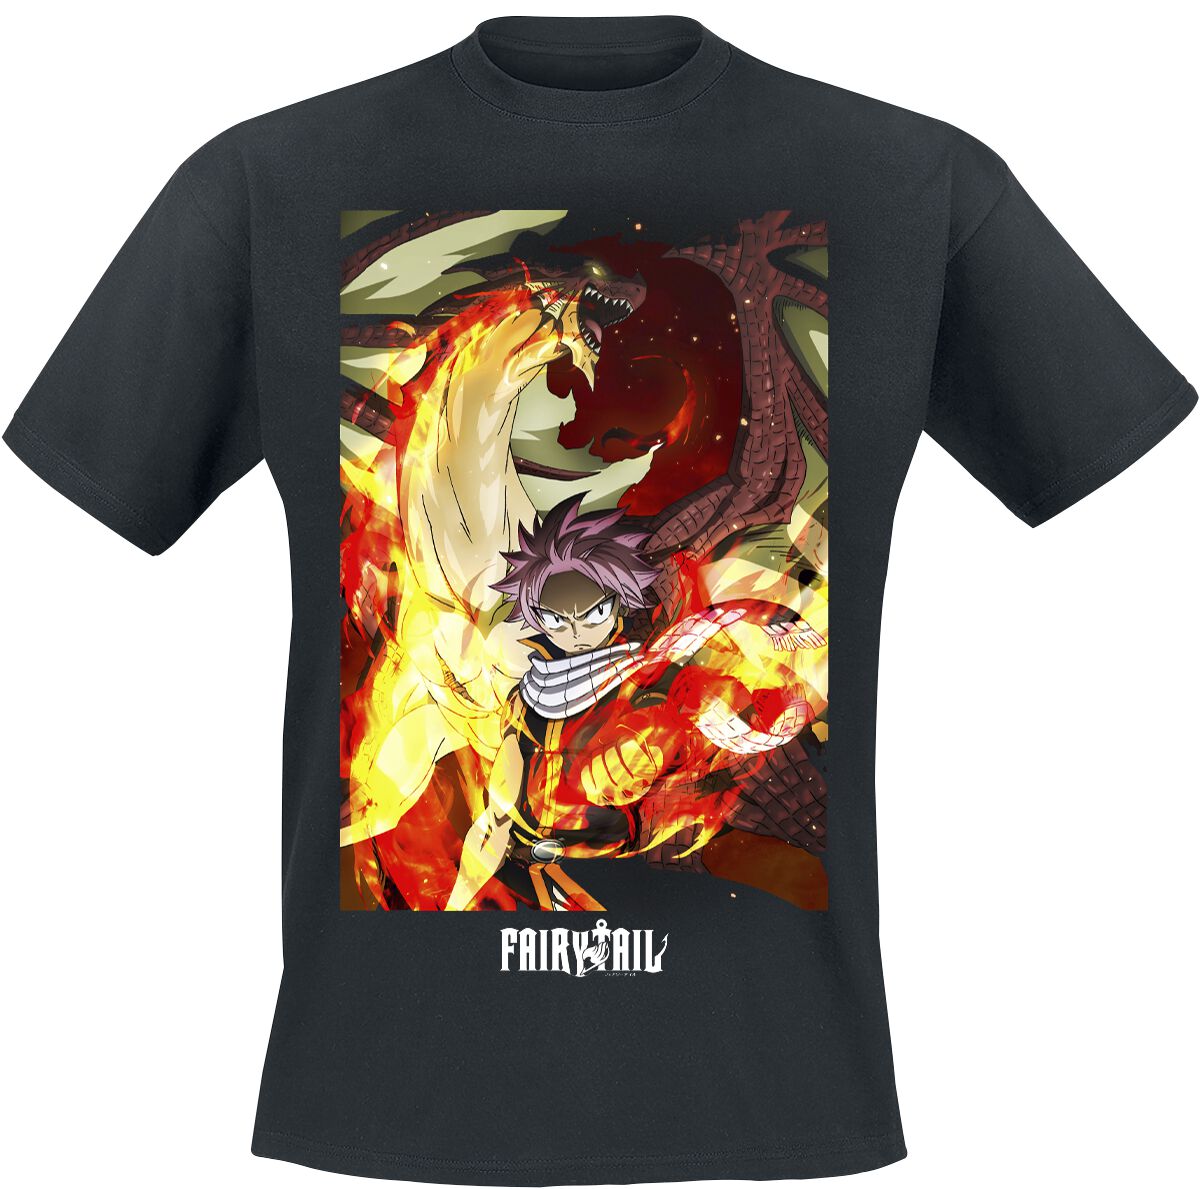 Fairy Tail - Anime T-Shirt - Fight - S bis XL - für Männer - Größe M - schwarz  - Lizenzierter Fanartikel von Fairy Tail